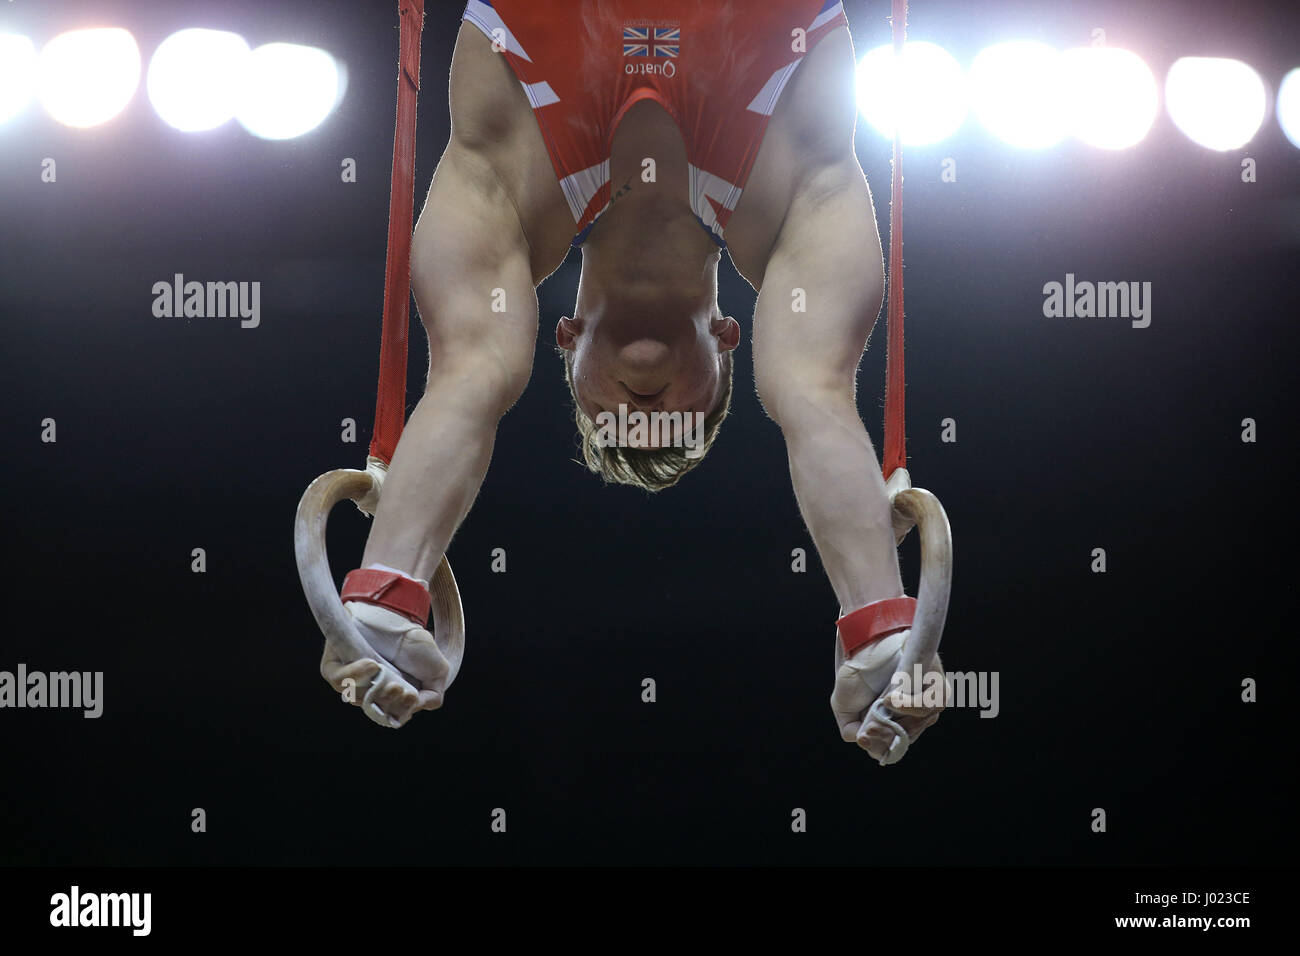 Große BritainÕs Brinn Bevan an den Ringen während der WM der Gymnastik in der O2 London. Stockfoto